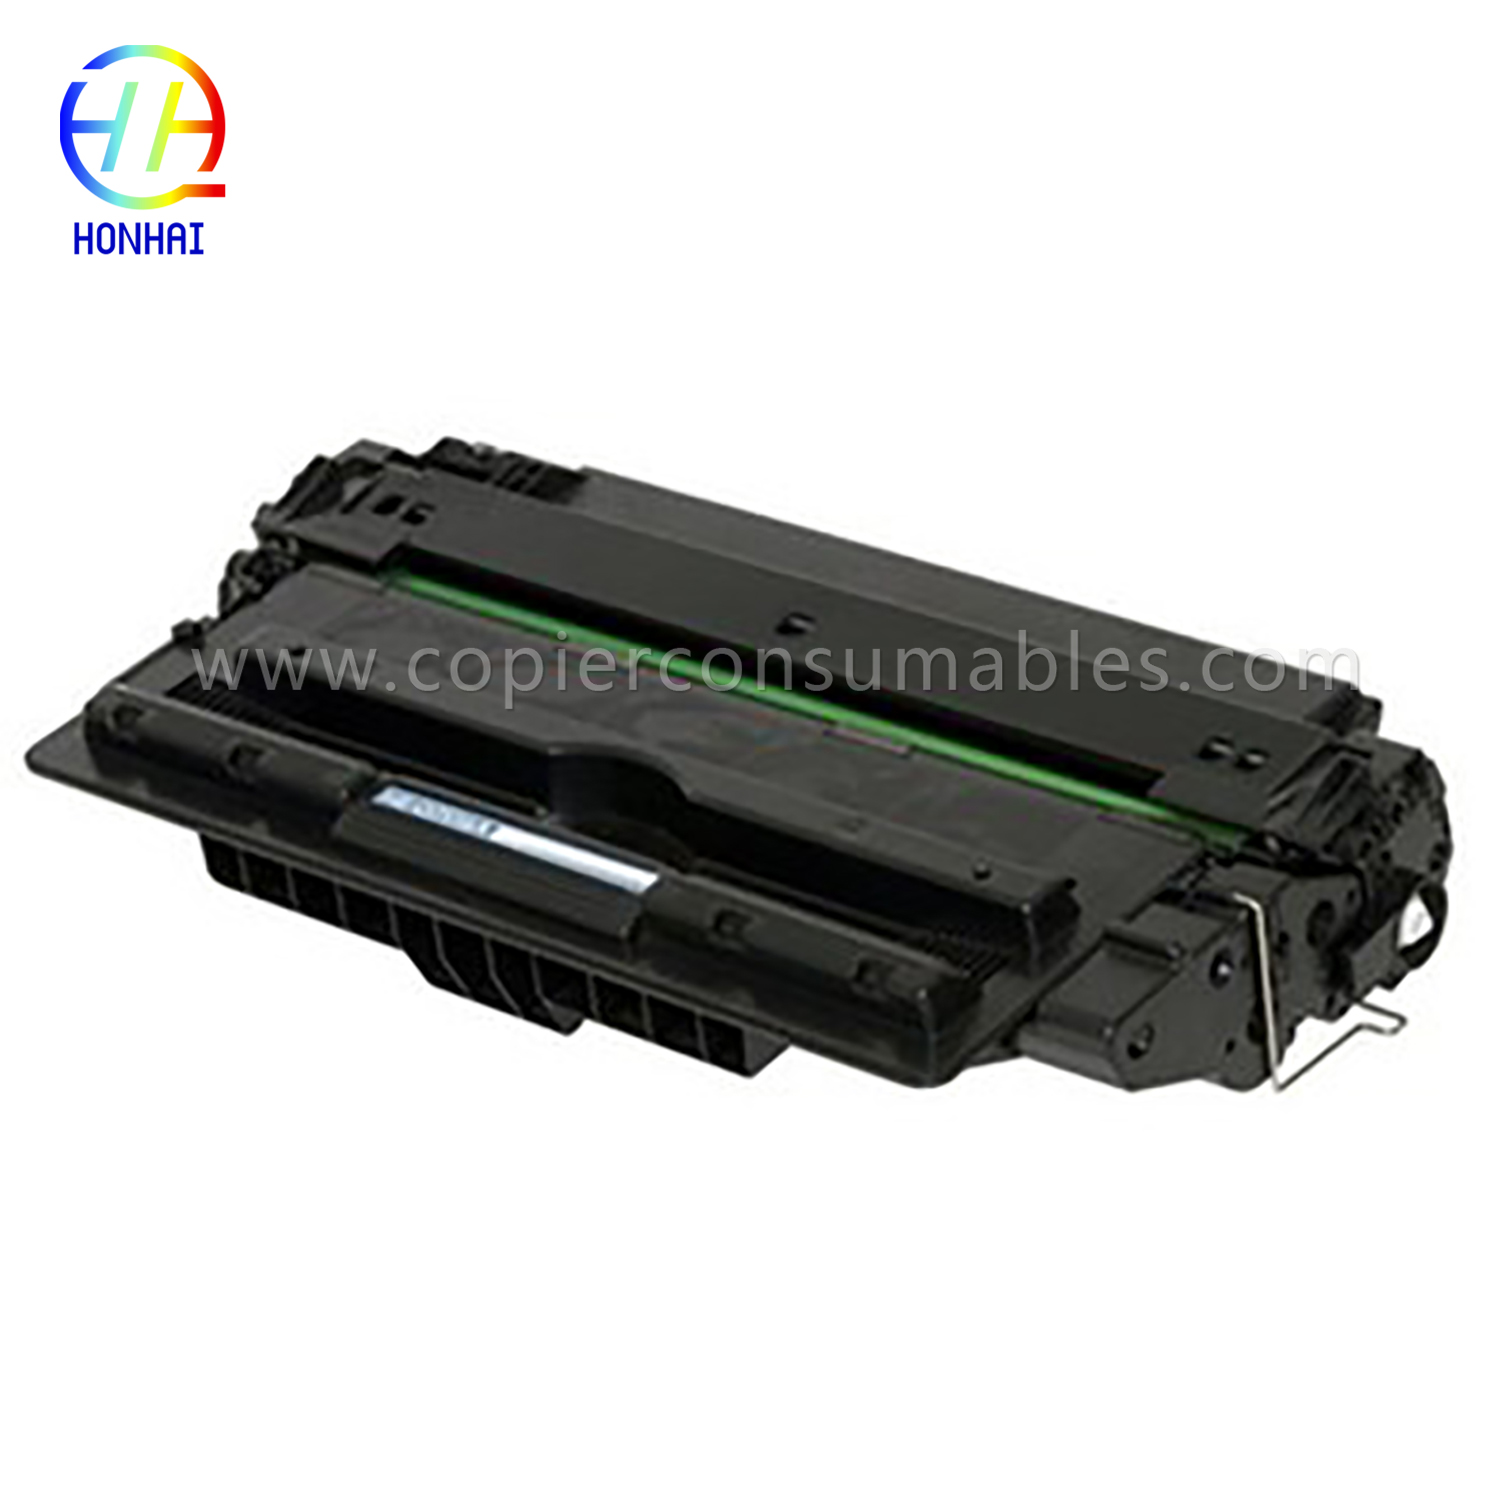 Kartrid Toner untuk HP LaserJet 5200 5200n 5200tn 5200dtn 5200L (Q7516A) (2) 拷贝